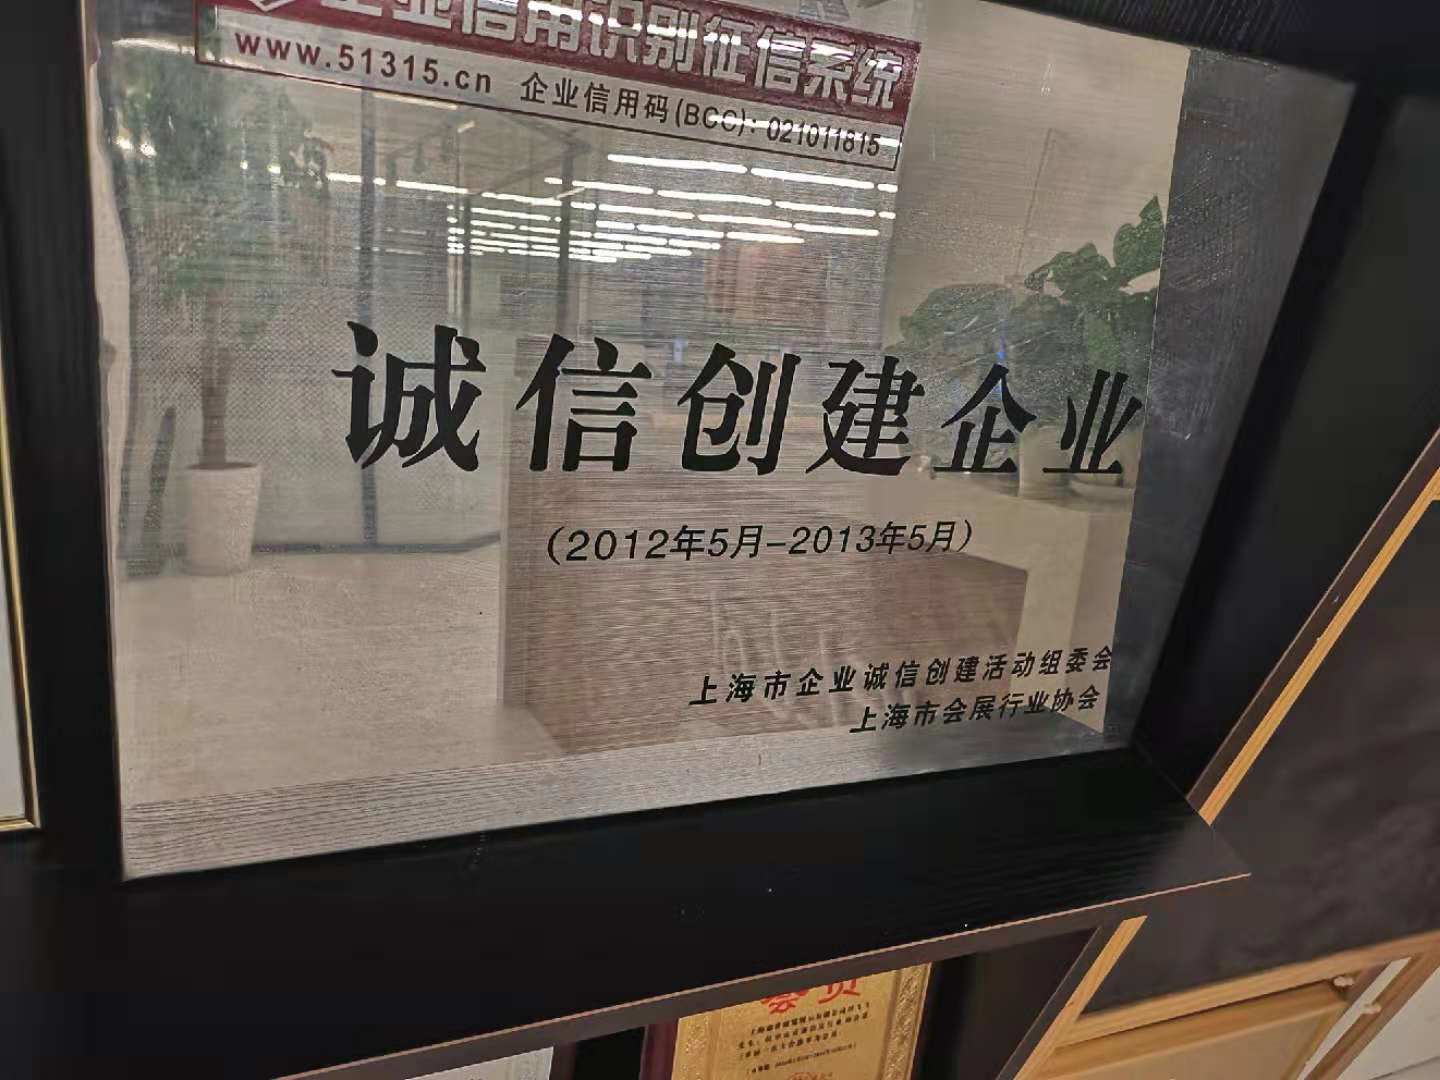 上海康发展柜厂获得奖项证书